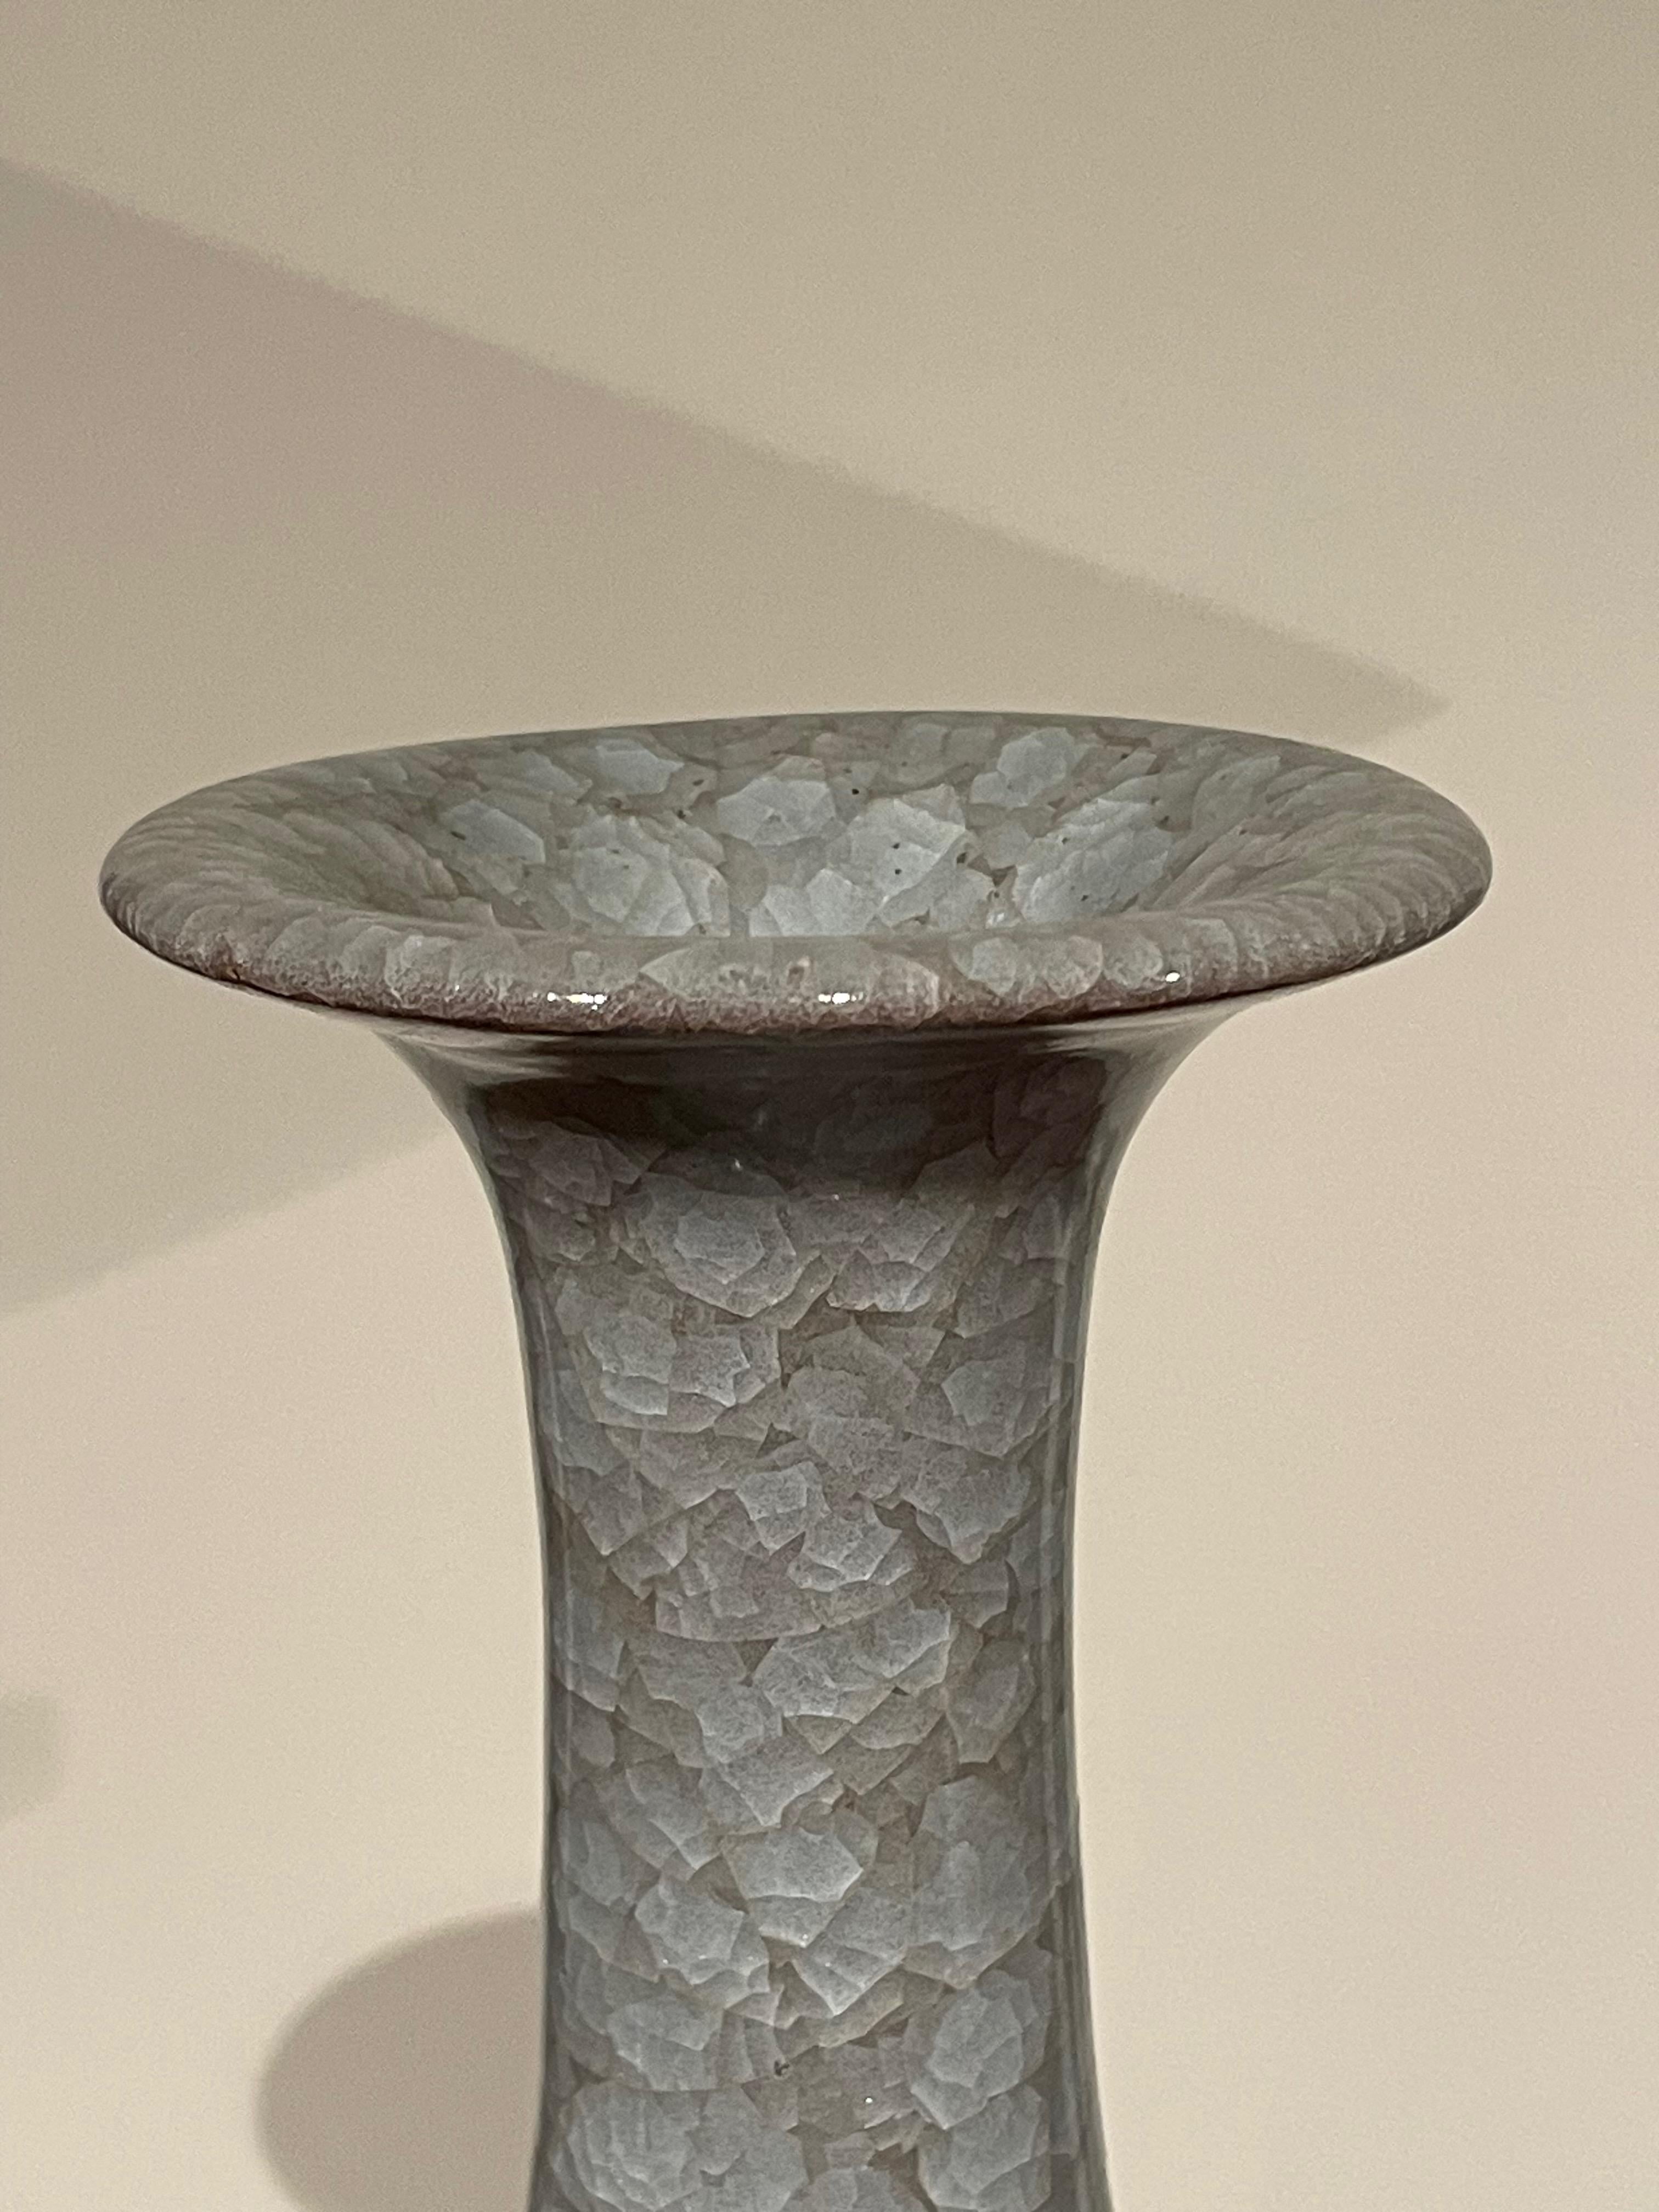 Vase chinois contemporain de couleur bleue avec glaçure craquelée.
Col tubulaire allongé.
Provenant d'une grande collection avec des formes et des tailles variées.
